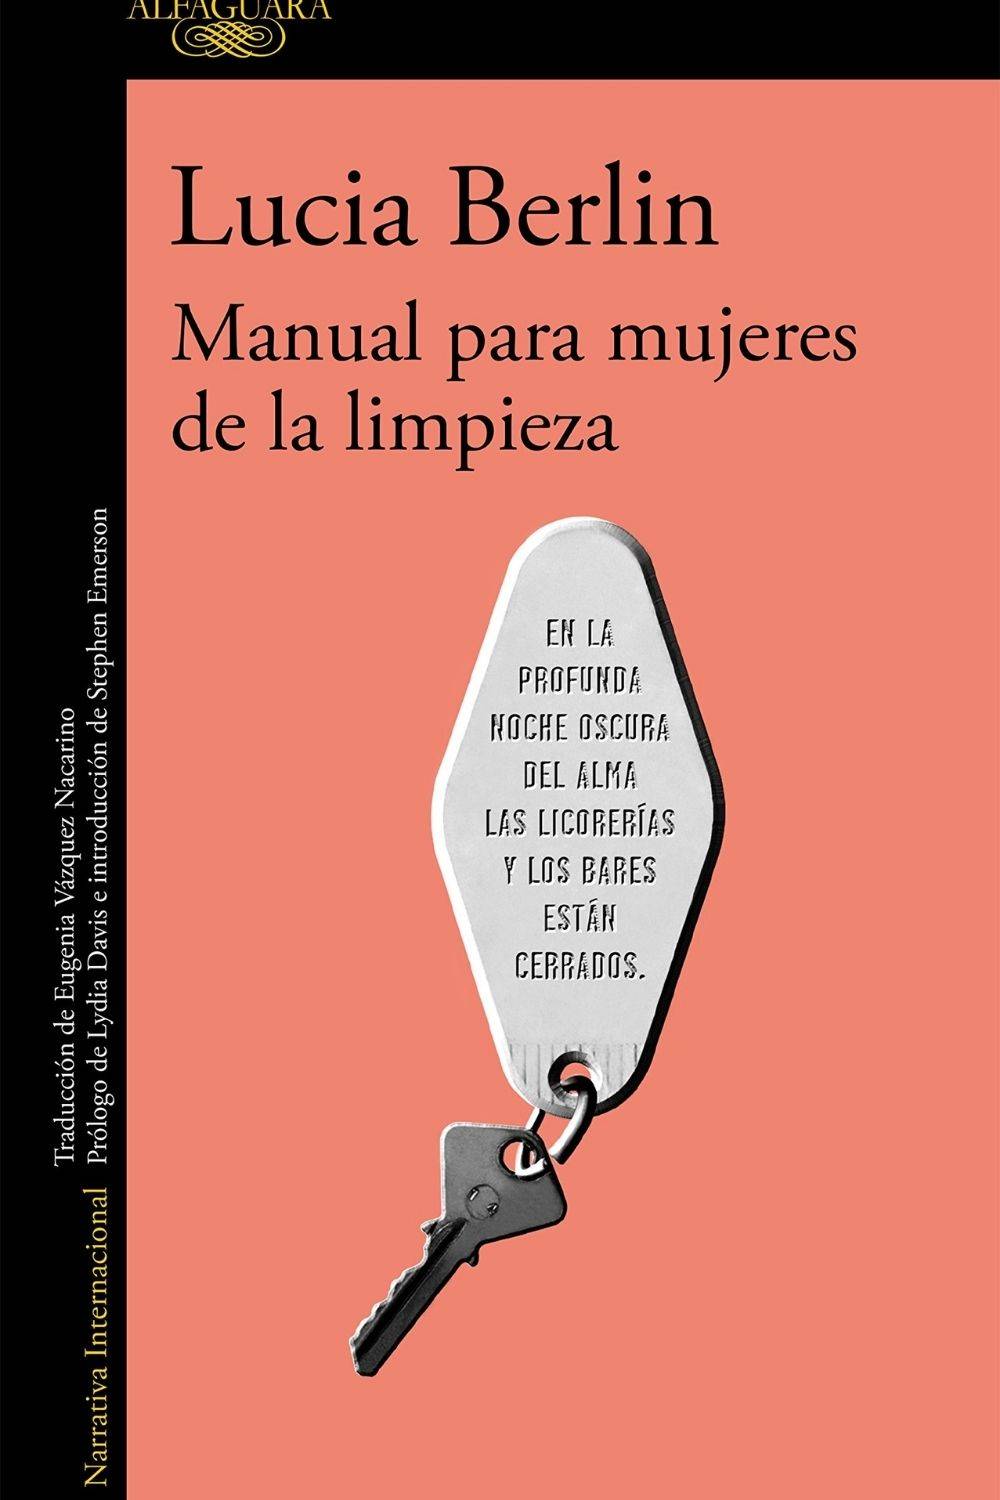 ‘Manual para mujeres de la limpieza’ de Lucia Berlin